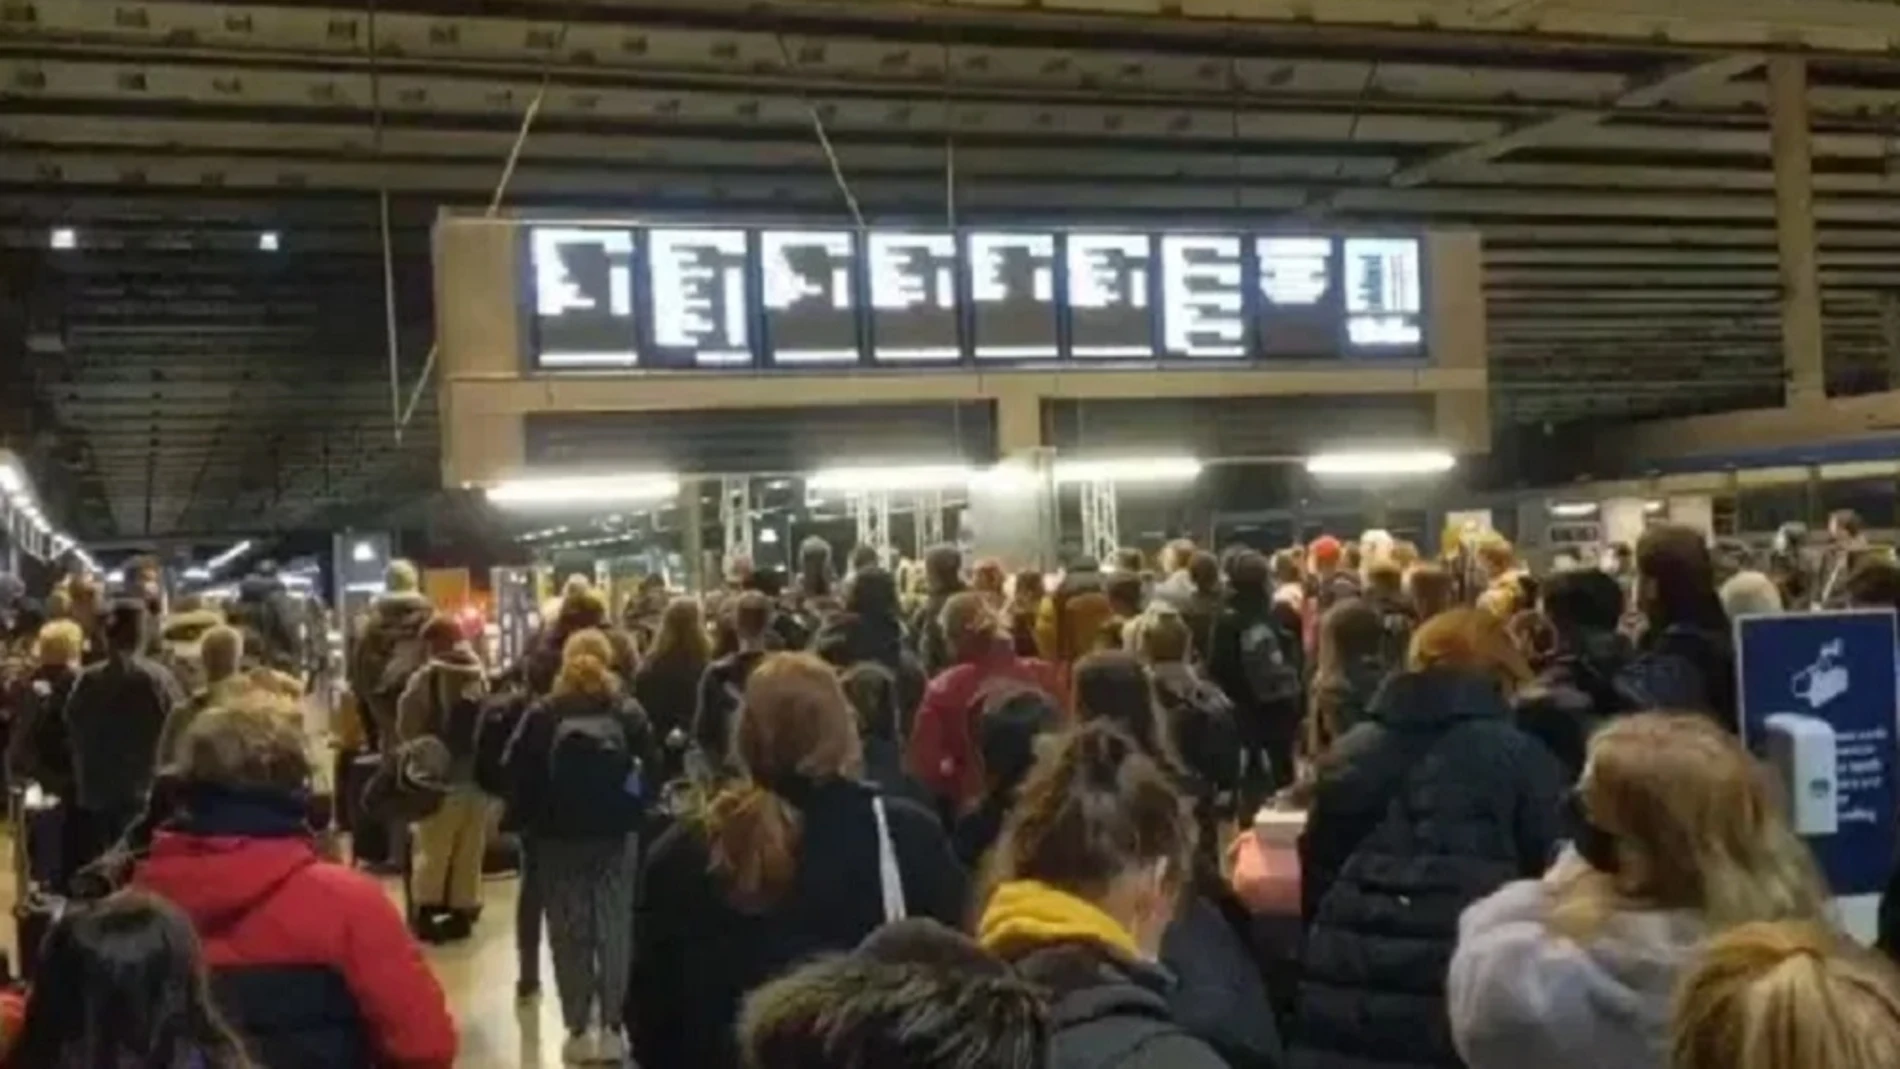 Imagen de aglomeraciones en una estación de tren de Londres